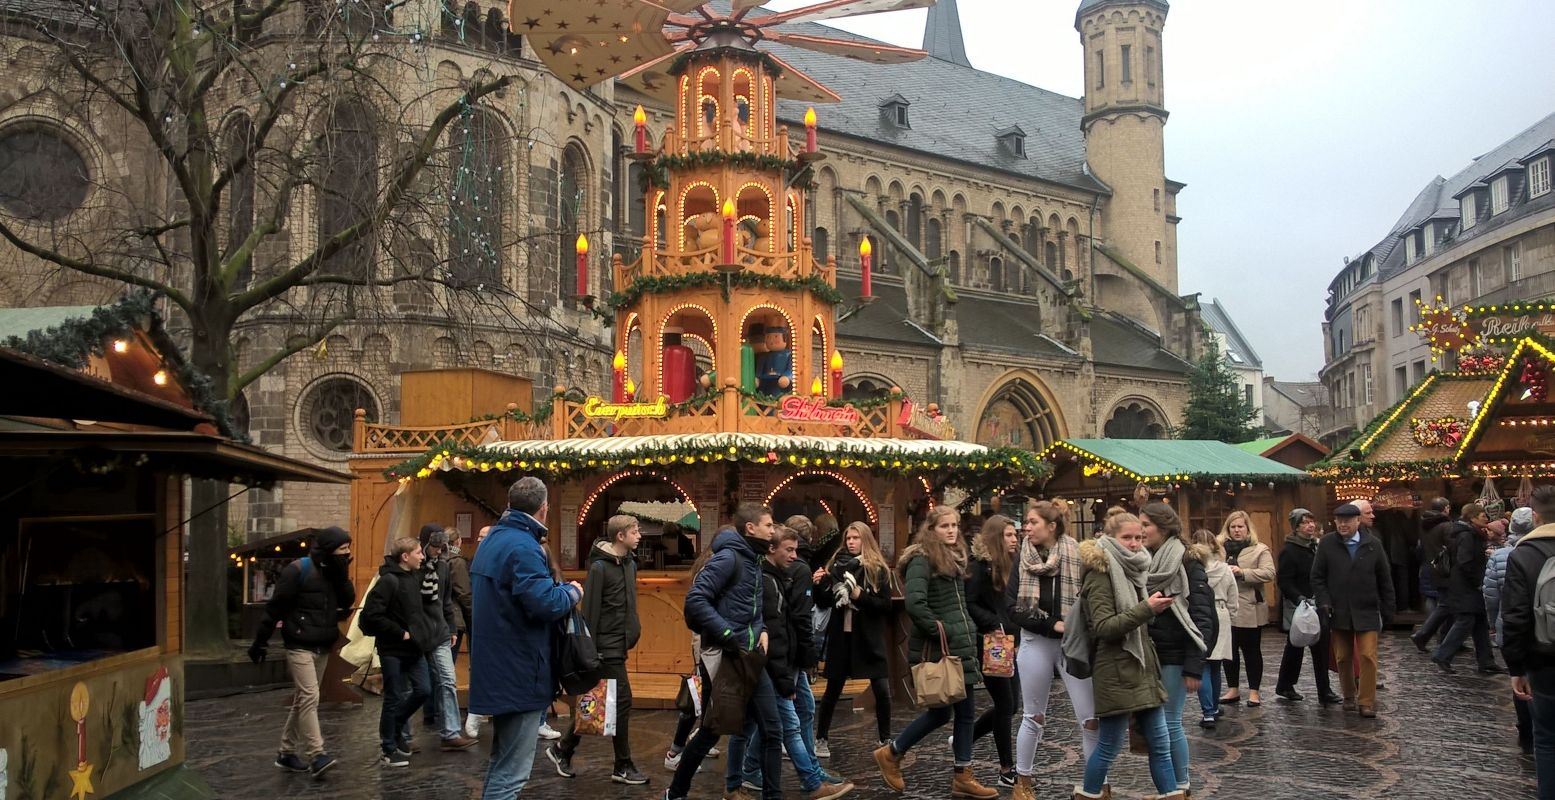 Ook overdag is het gezellig op de kerstmarkt in Bonn met zijn traditionele houten Duitse kersttoren vol ronddraaiende figuren. Foto: DagjeWeg.NL